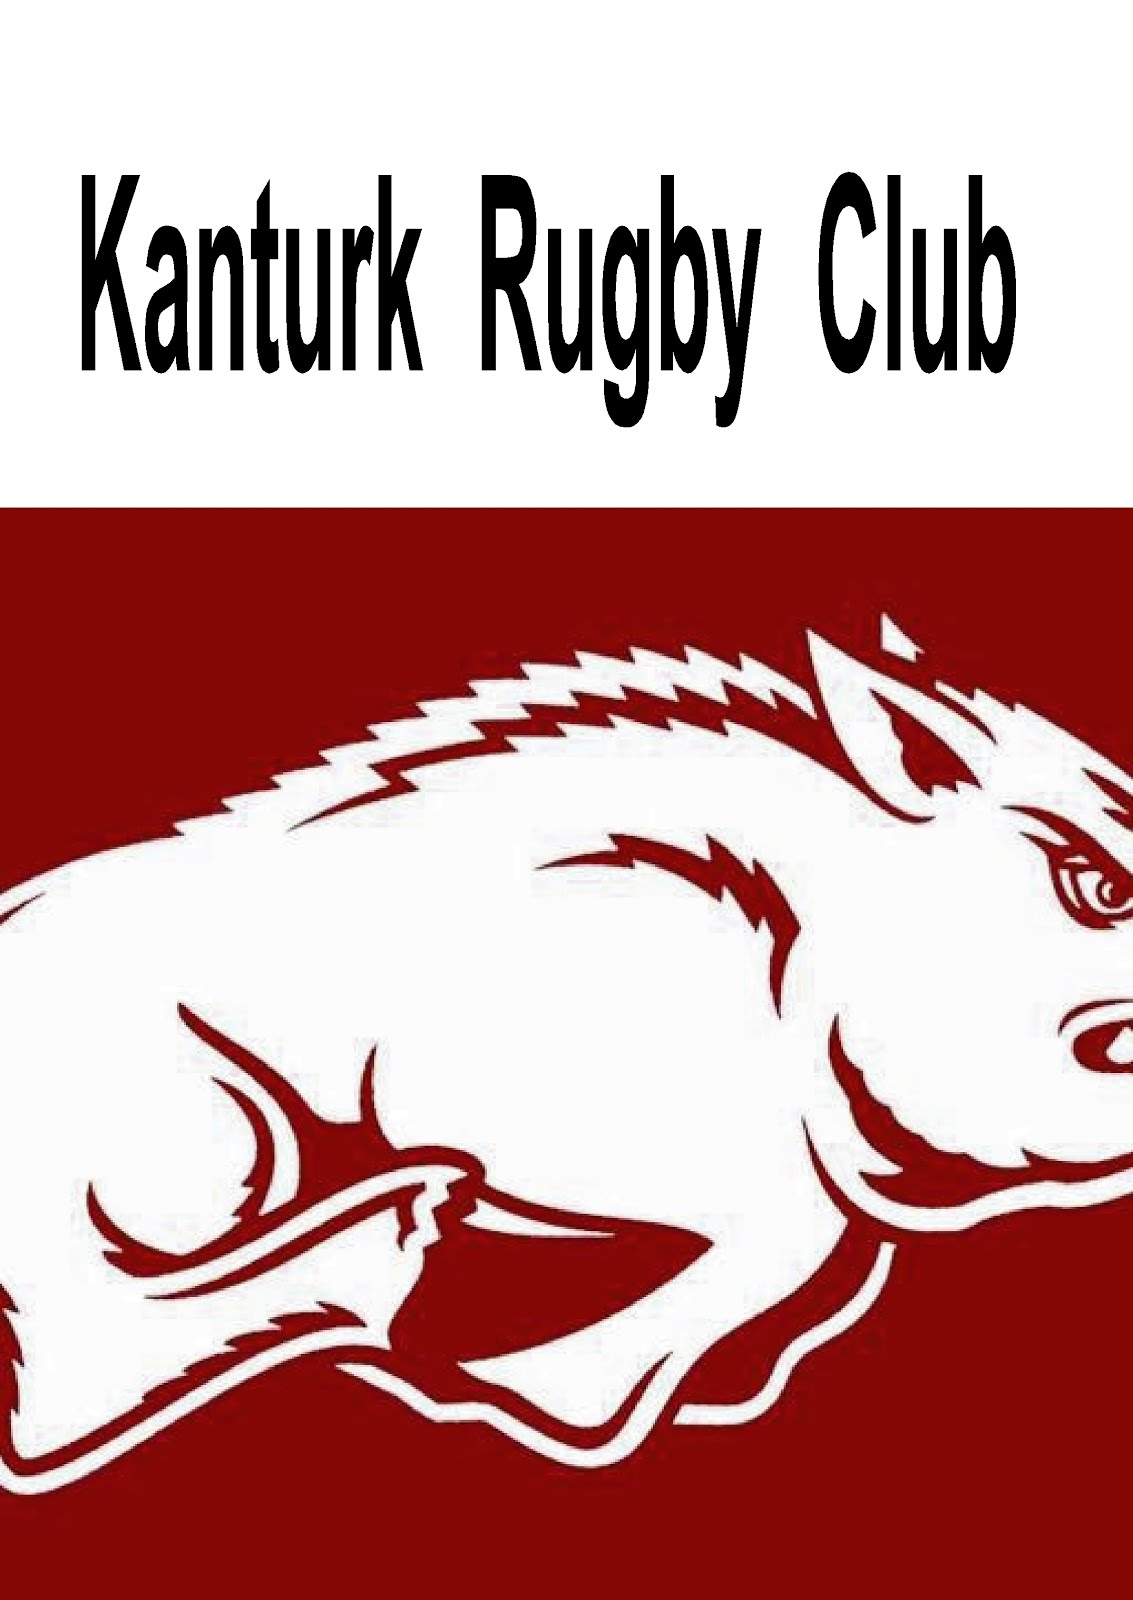 Kanturk Rugby Club